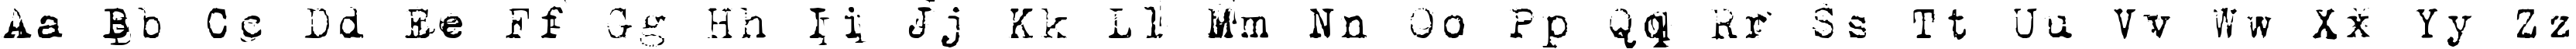 Пример написания английского алфавита шрифтом 1942 report